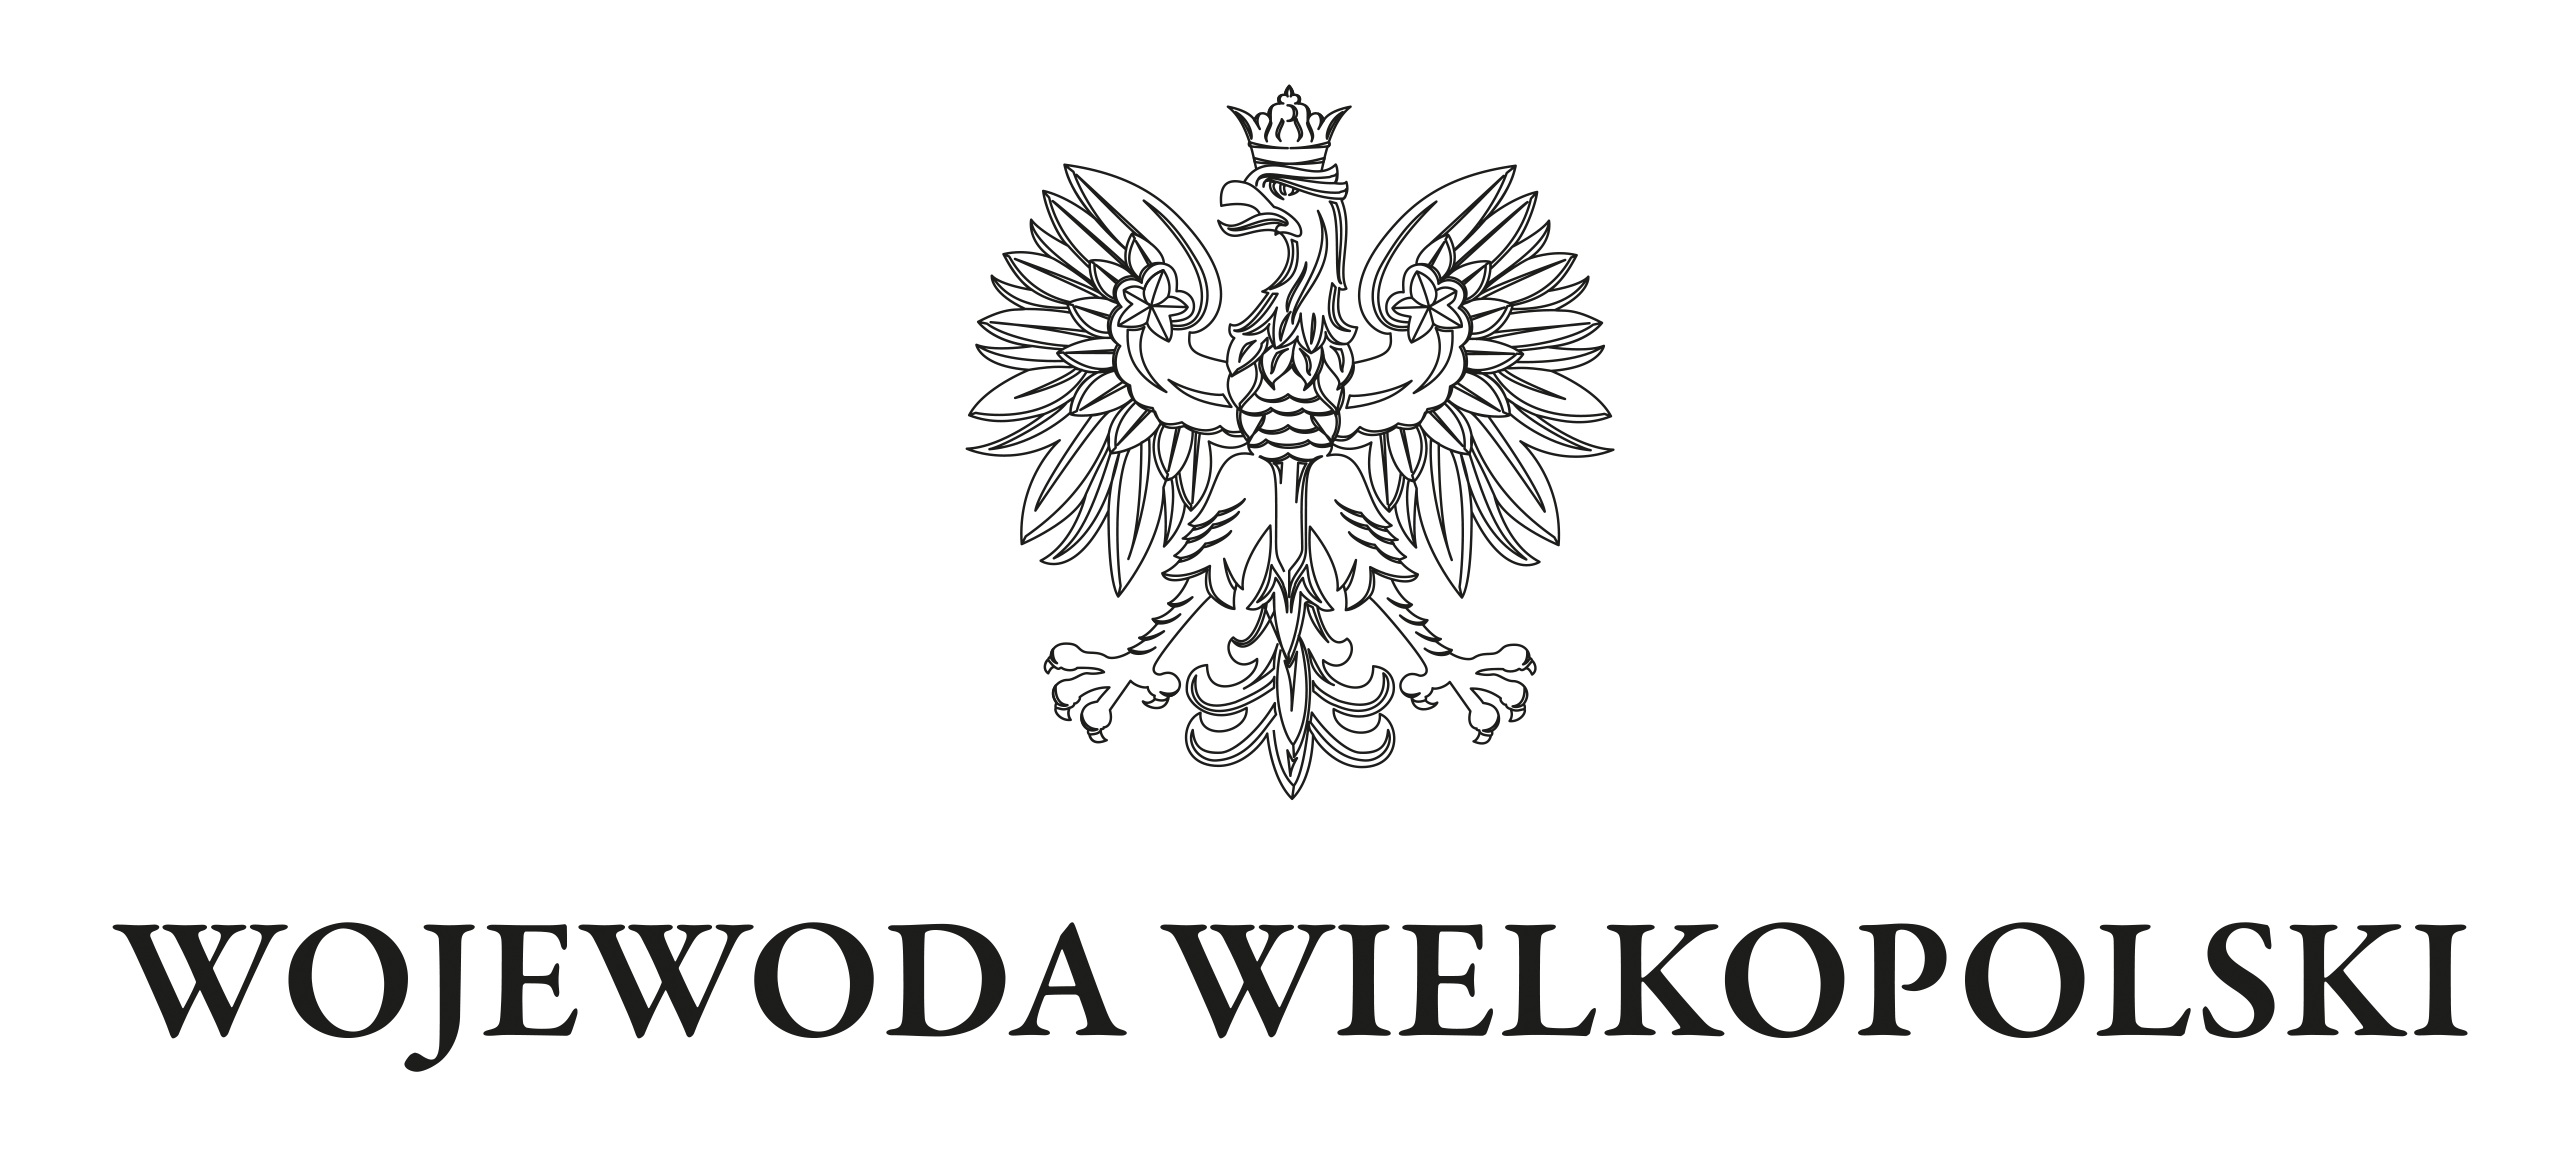 https://poznan.uw.gov.pl/system/files/zalaczniki/wojewoda_wielkopolski.png